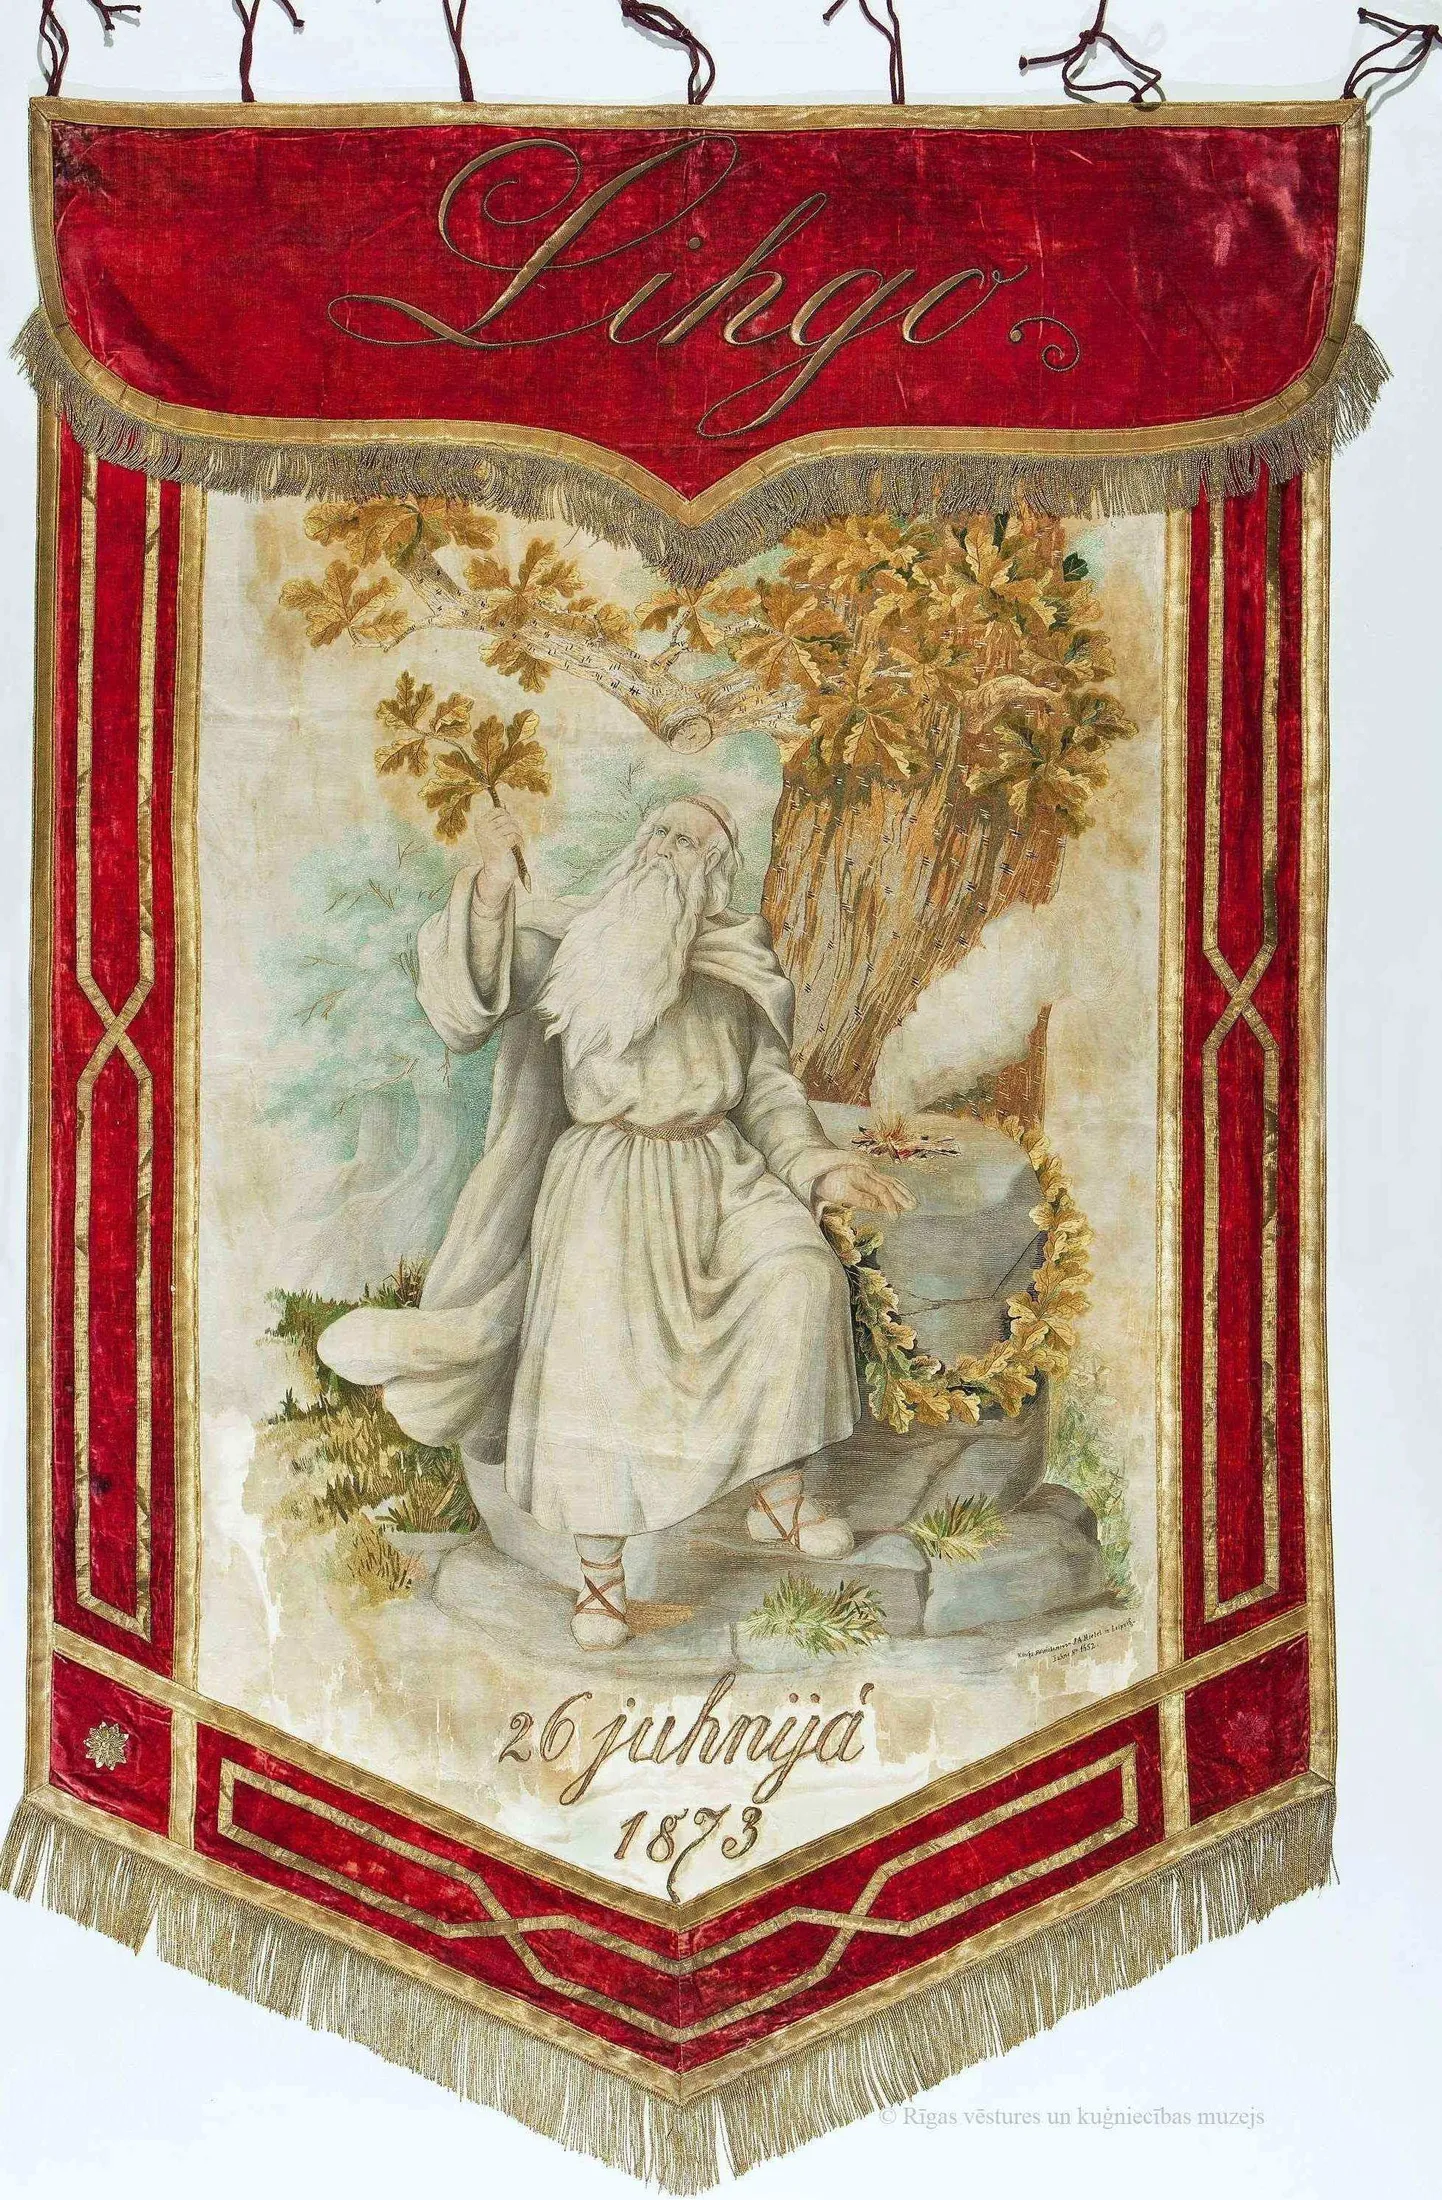 Dziesmusvētku relikvija - Līgo karogs. 1873. gads.